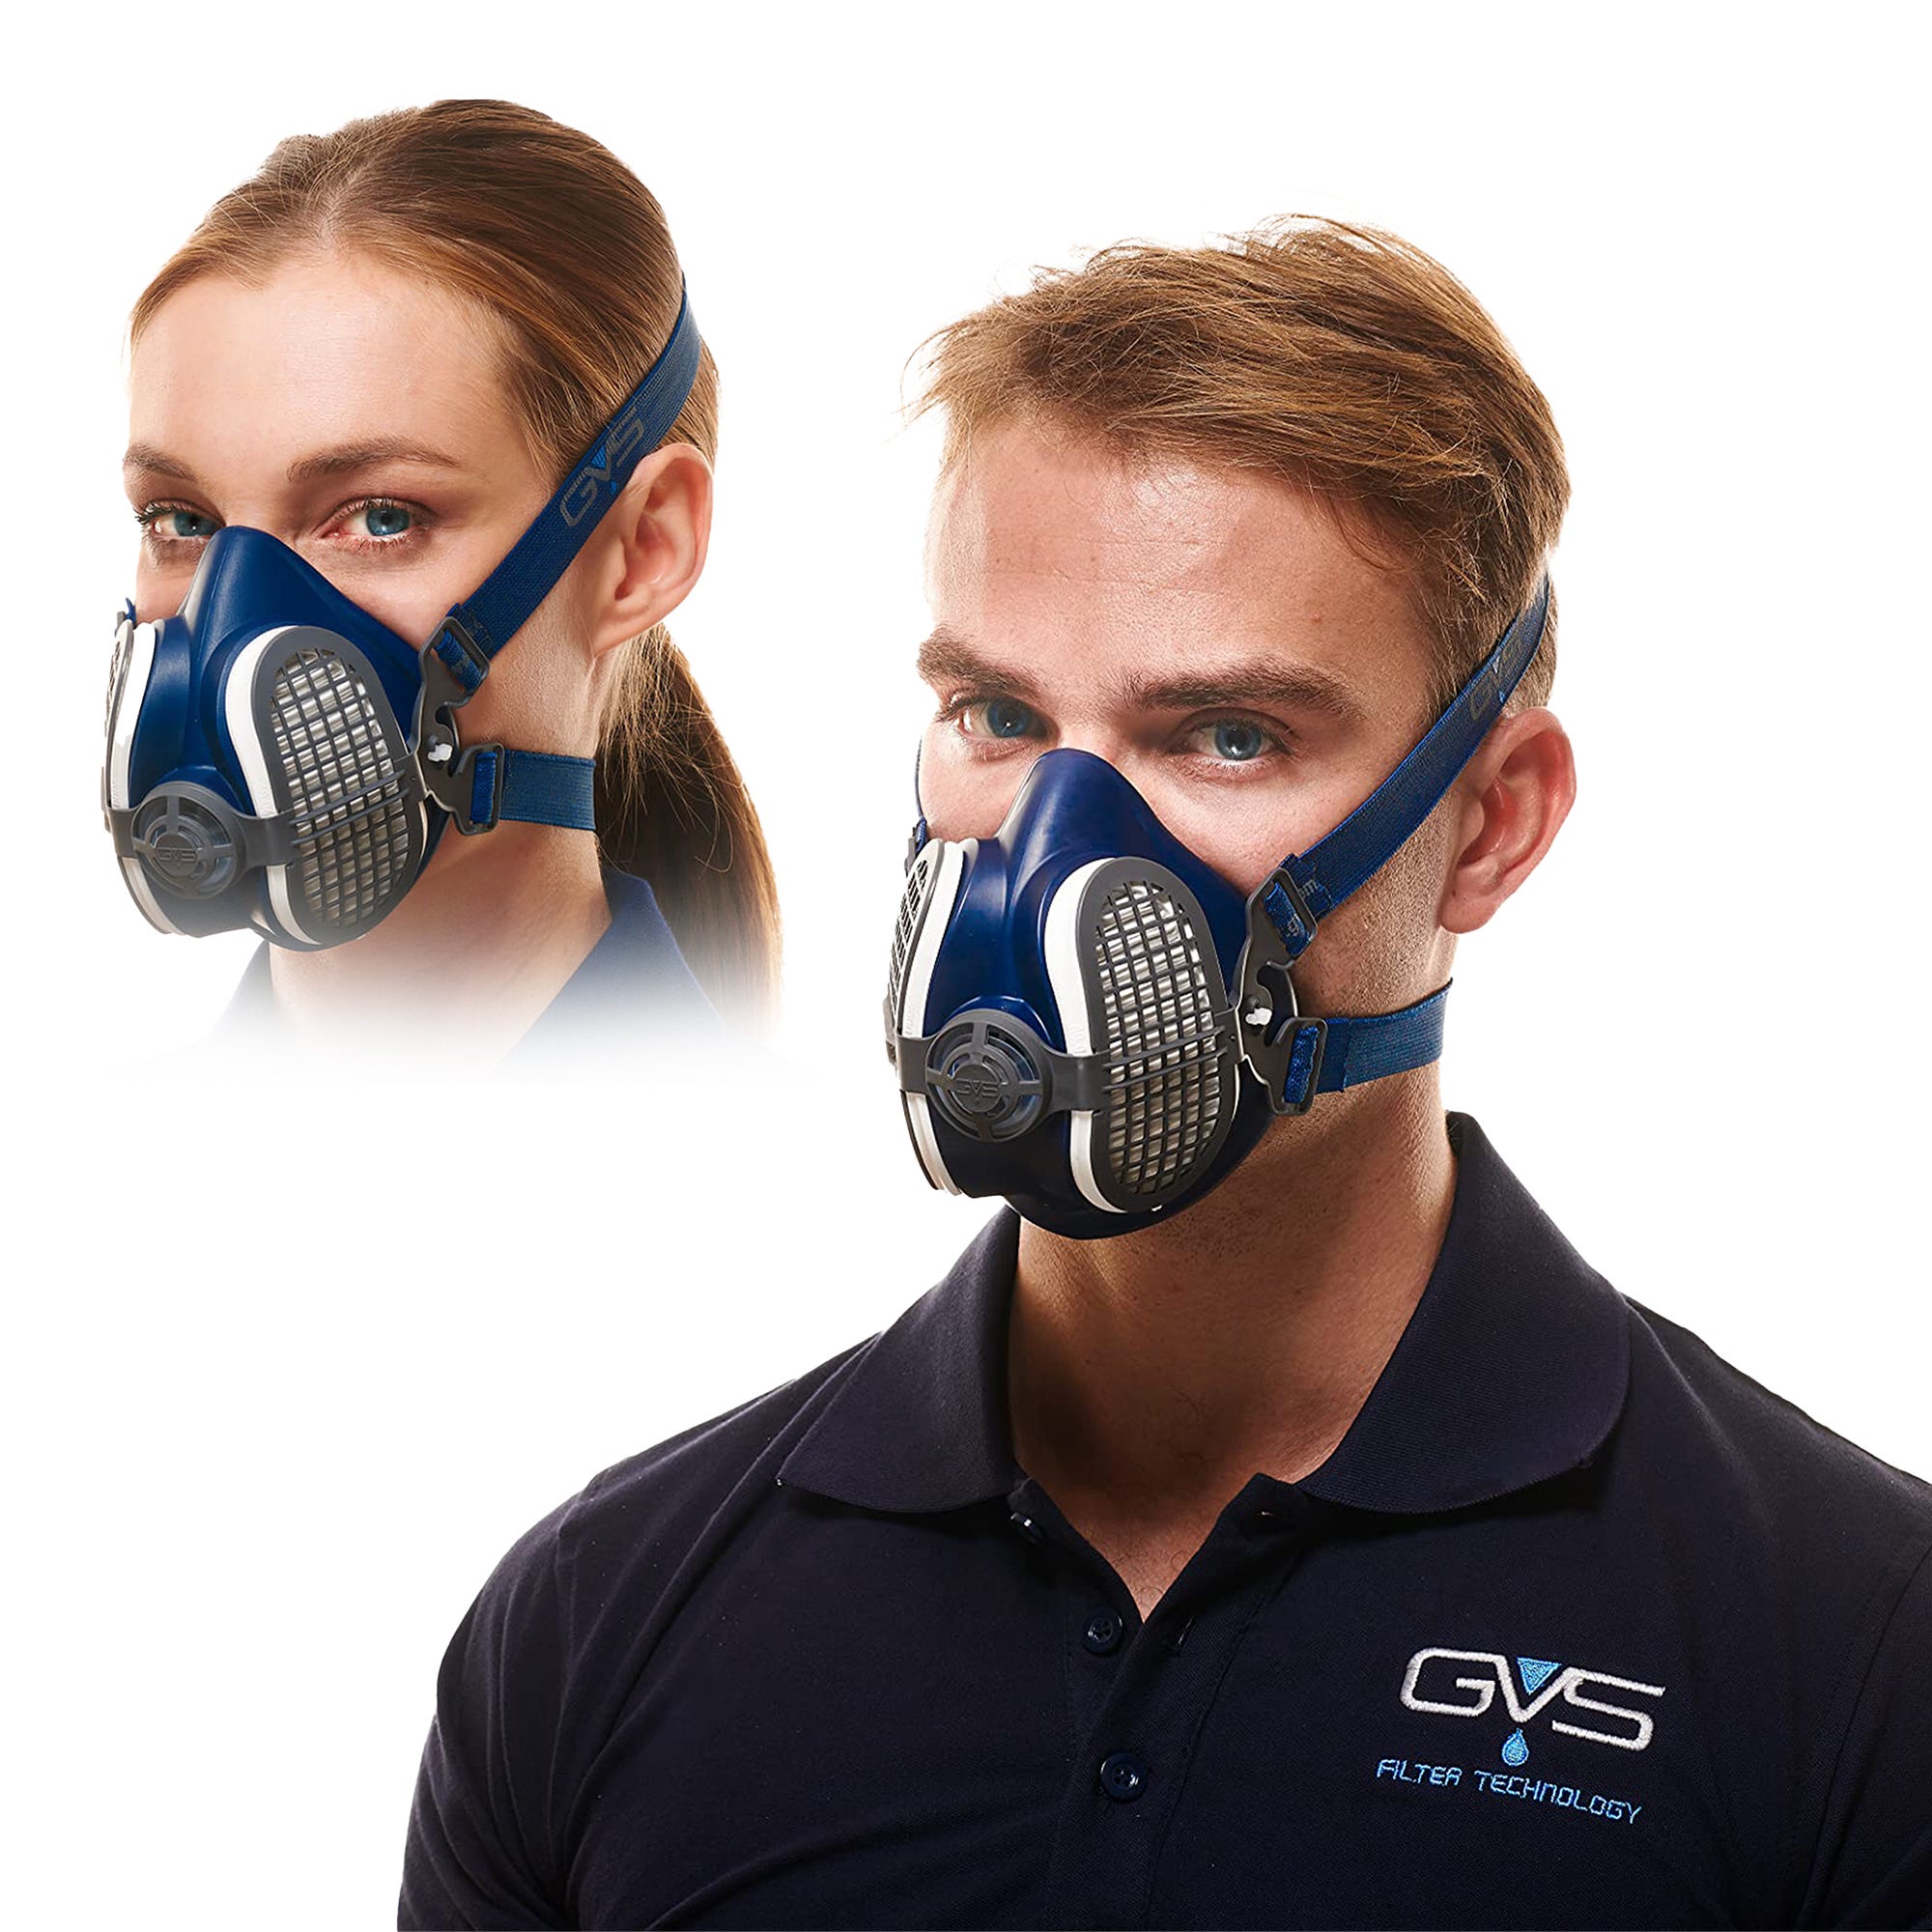 M-500 Masque De Protection Respiratoire Réutilisable, Anti